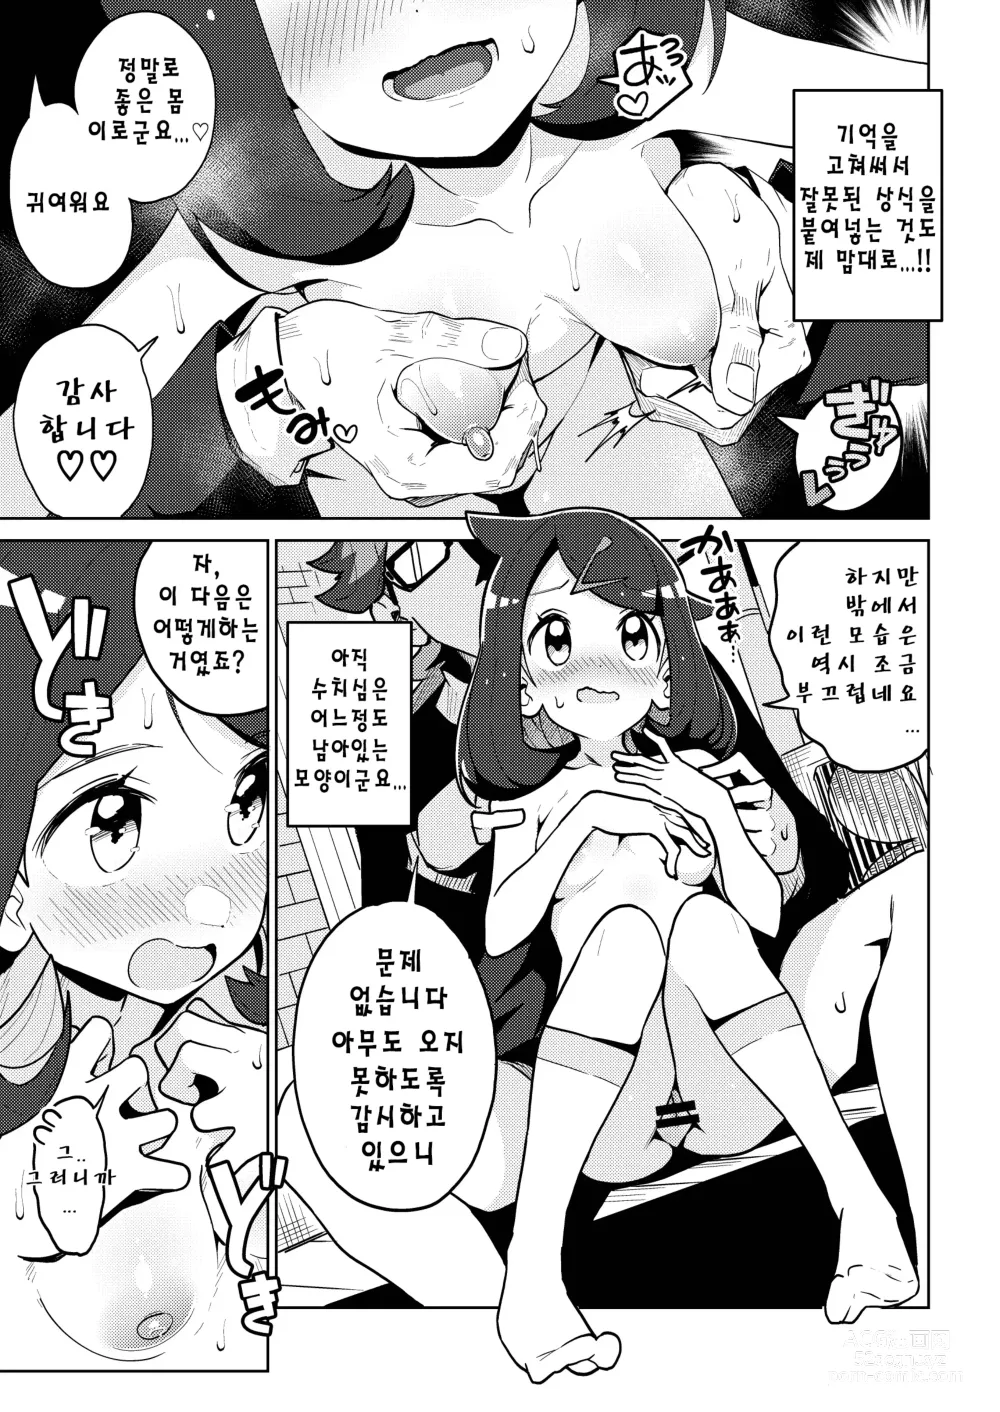 Page 8 of doujinshi 사이코파워라는건 대체 뭐죠?